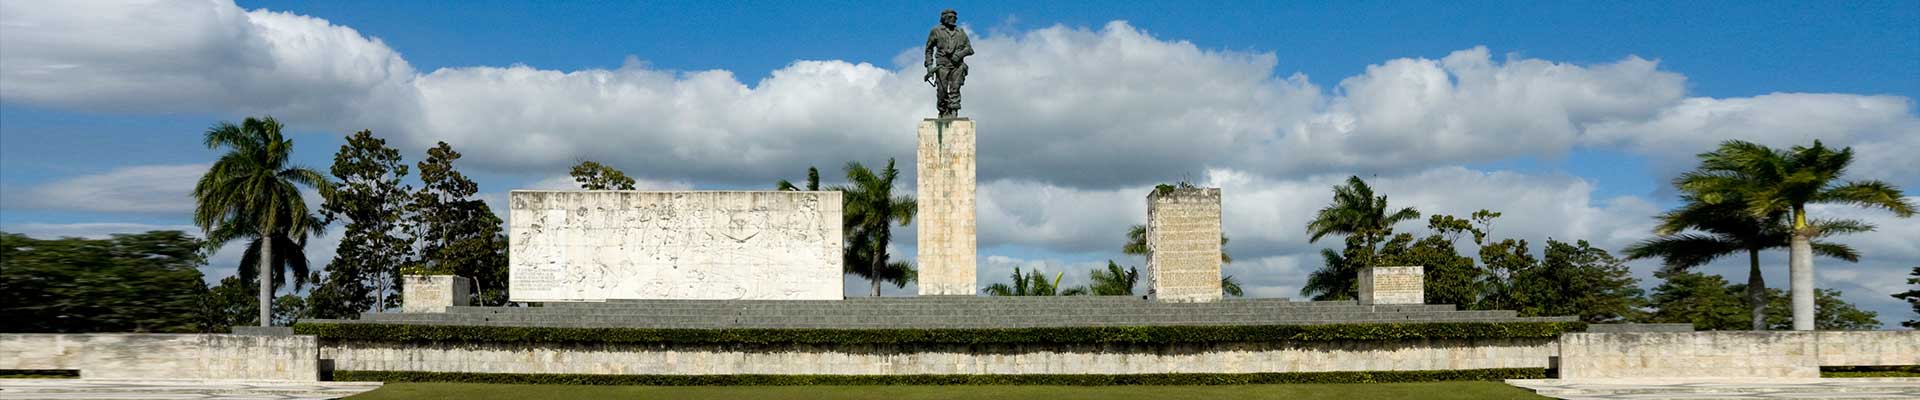 Mausoleum von Che Guevara in Santa Clara.